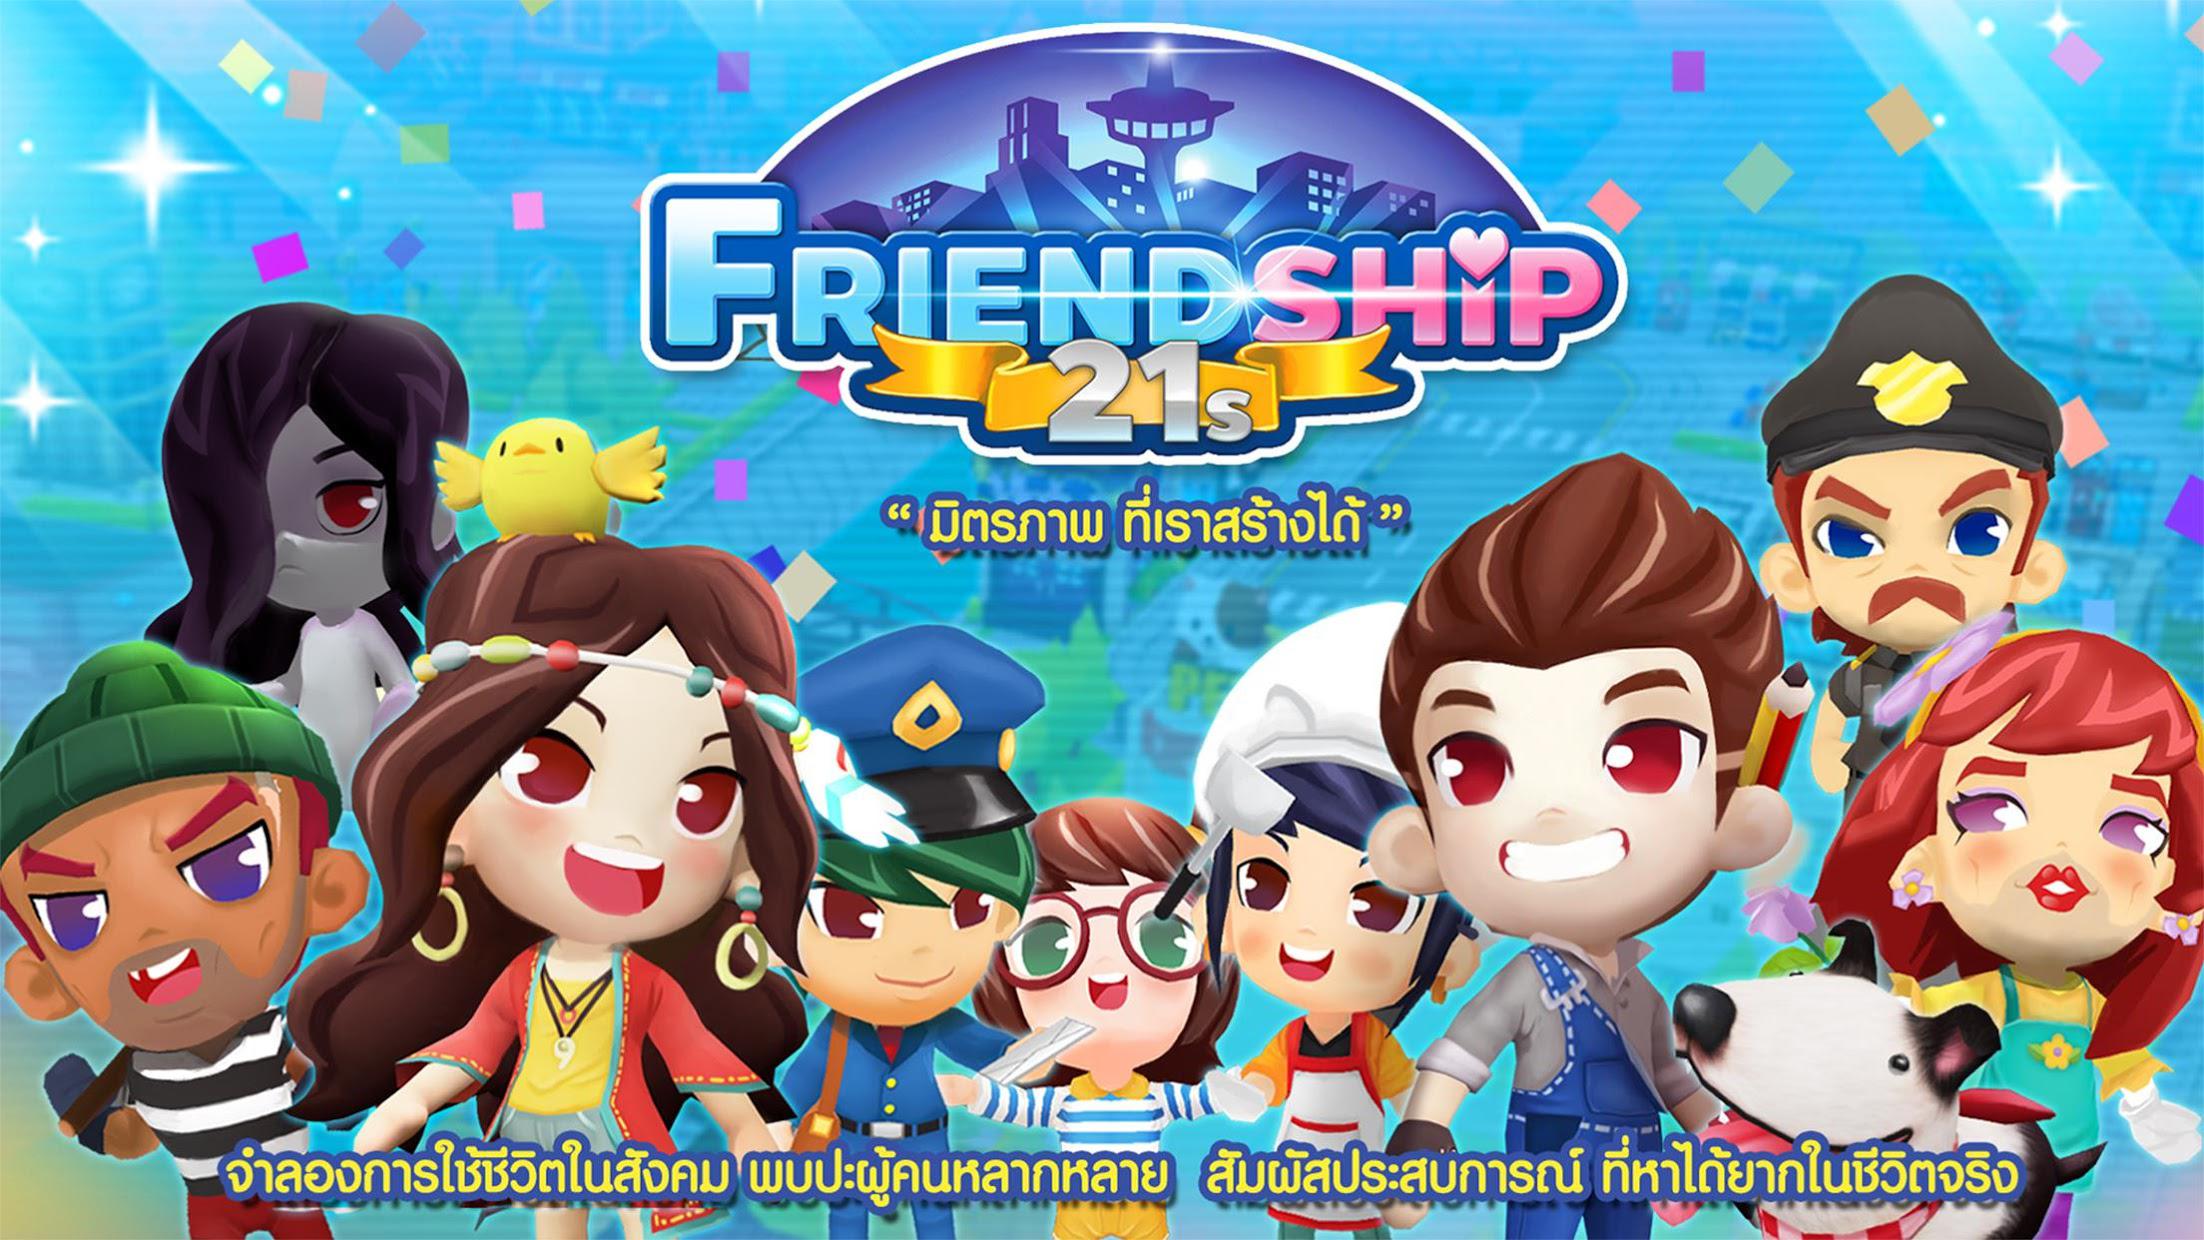 Friendship21s_游戏简介_图2